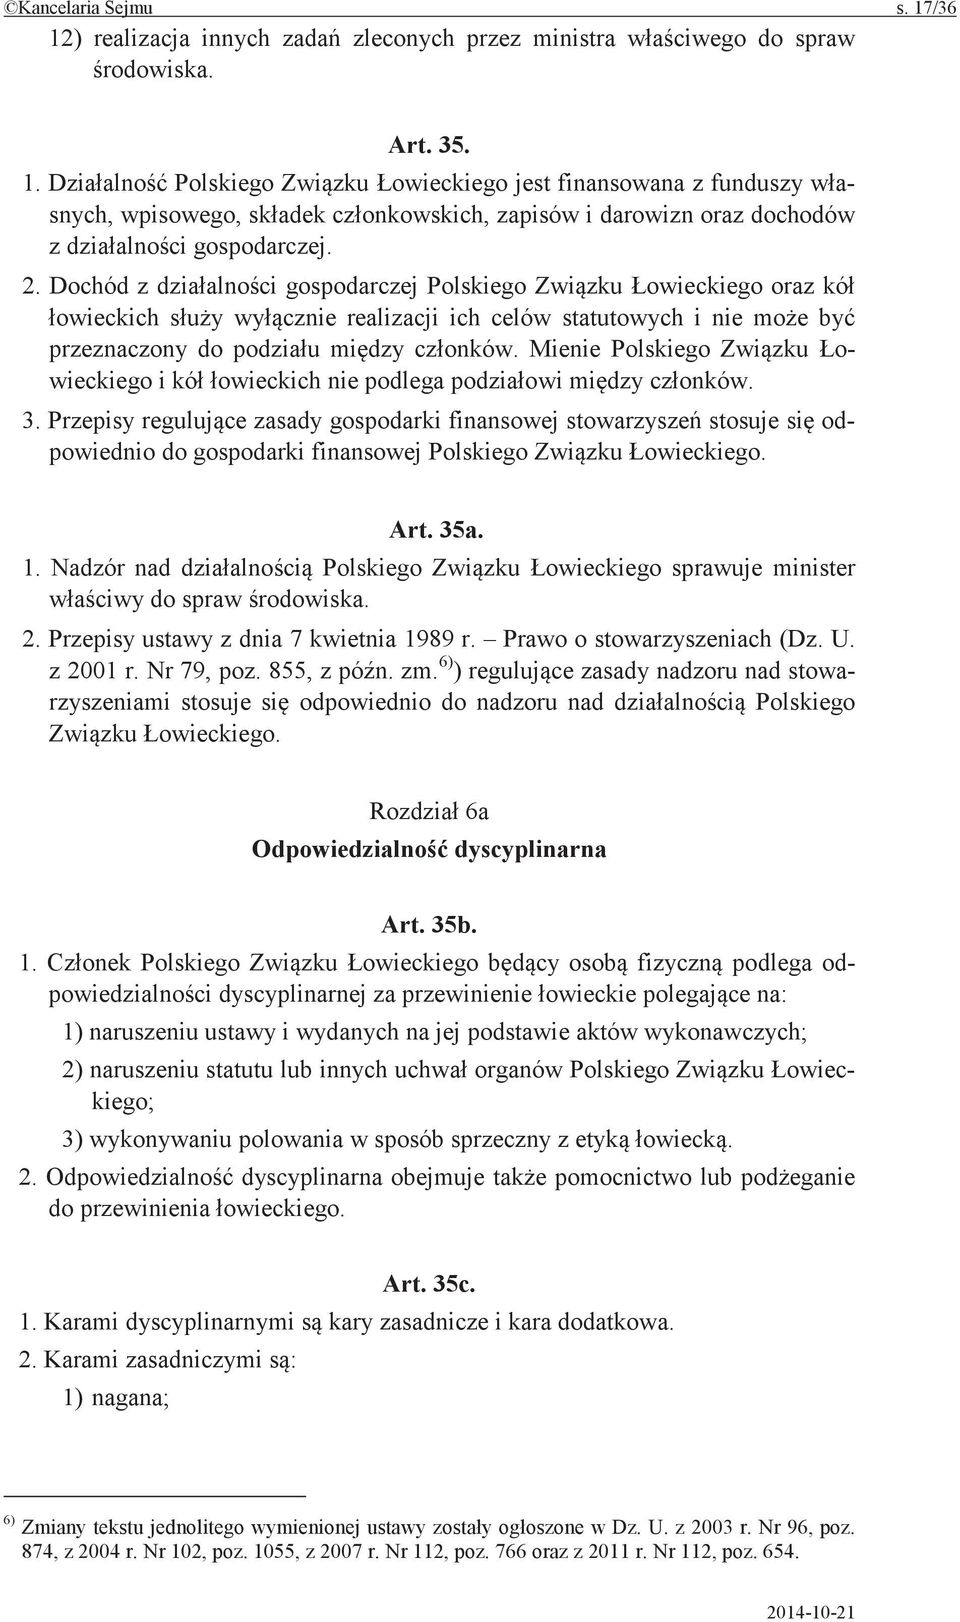 Przepisy zasady gospodarki finansowej stosuje odpowiednio do gospodarki finansowej Polskiego Art. 35a. 1. Nadzór nad Polskiego sprawuje minister do spraw 2. Przepisy ustawy z dnia 7 kwietnia 1989 r.